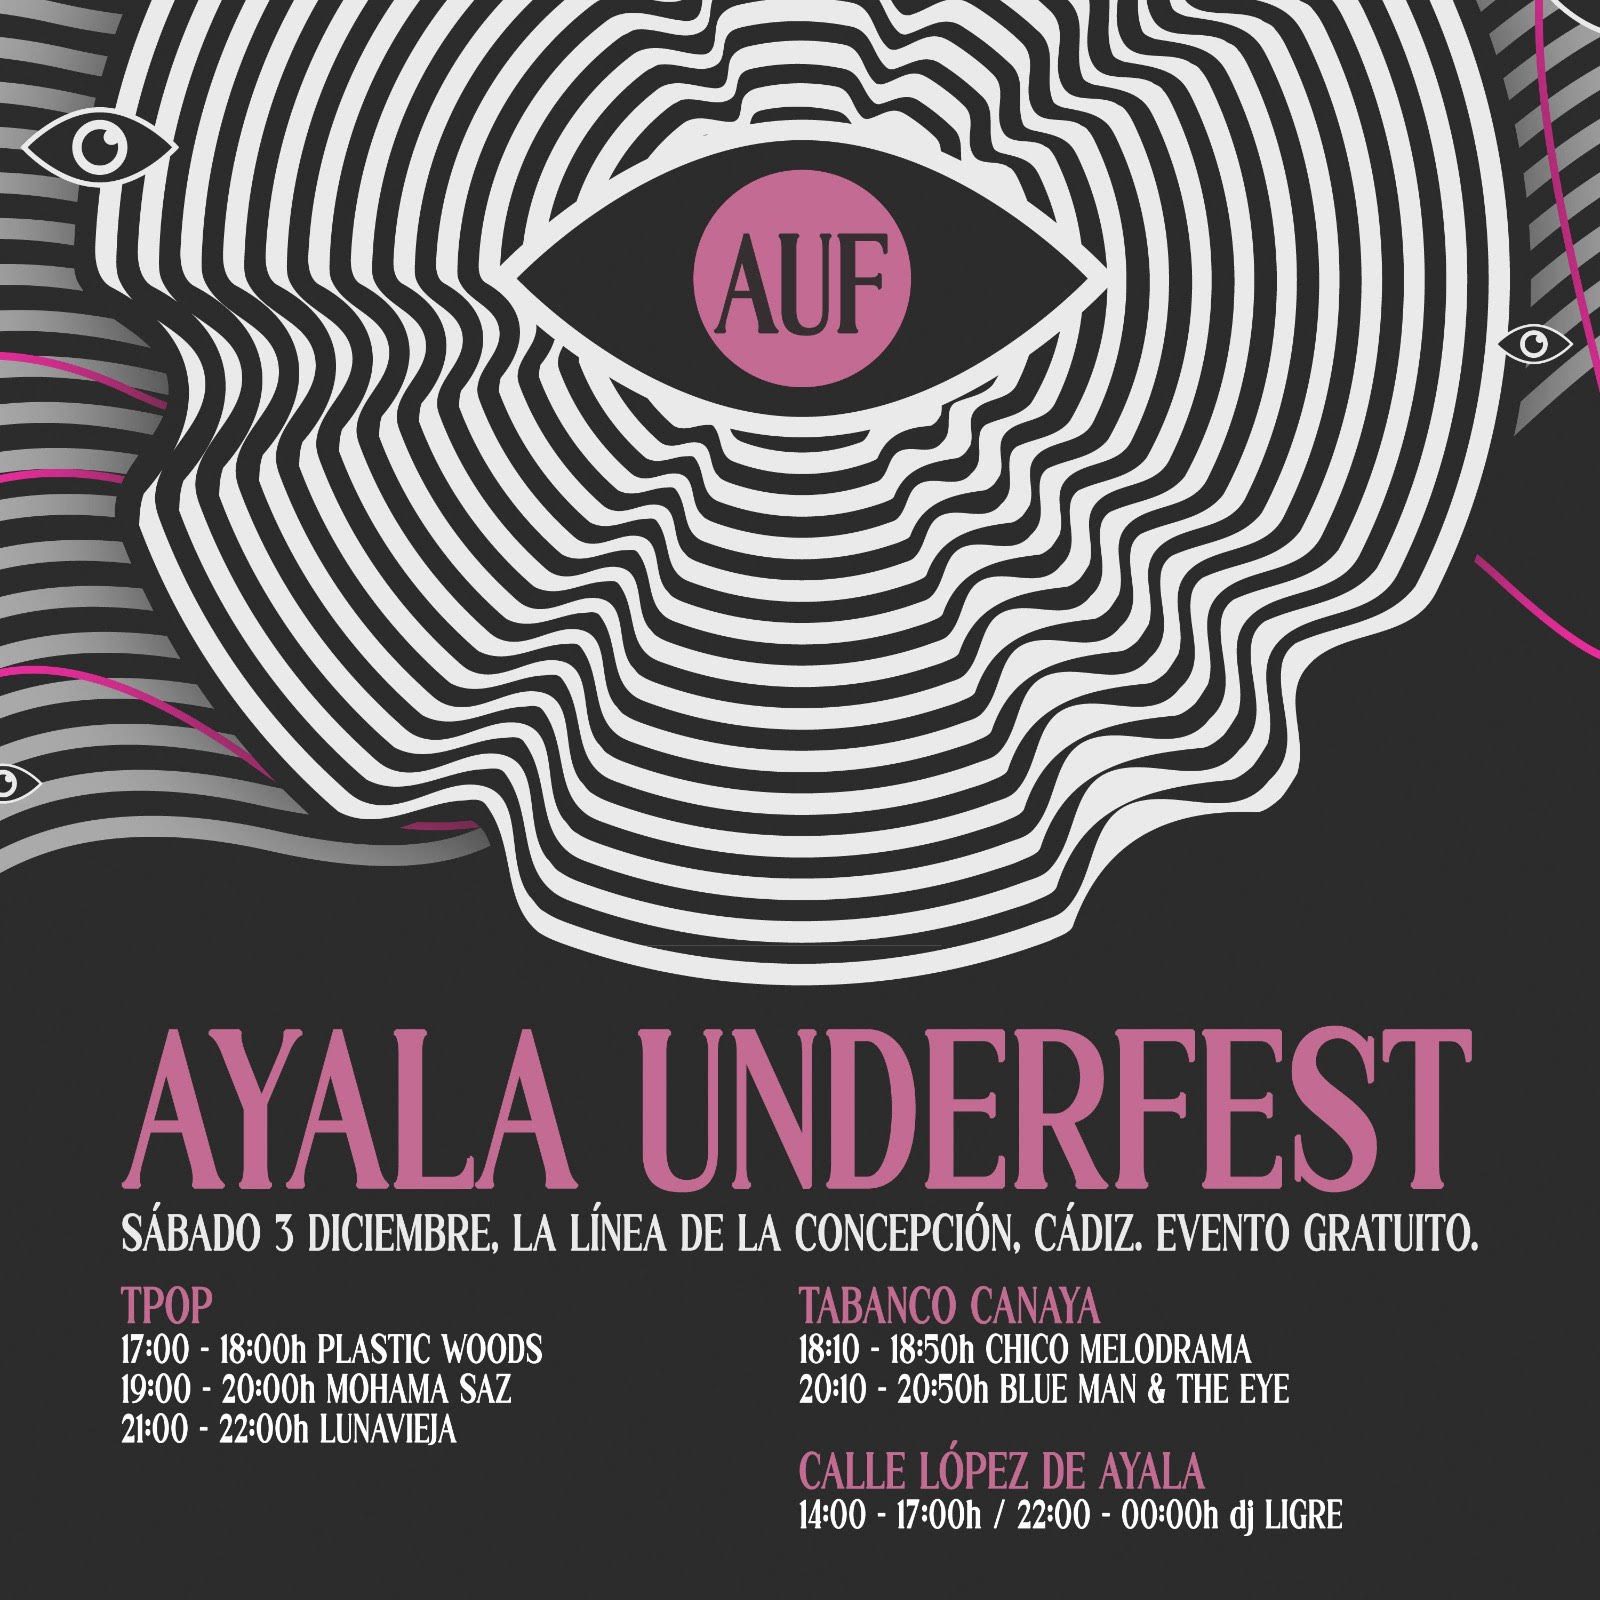 Ayala Underfest